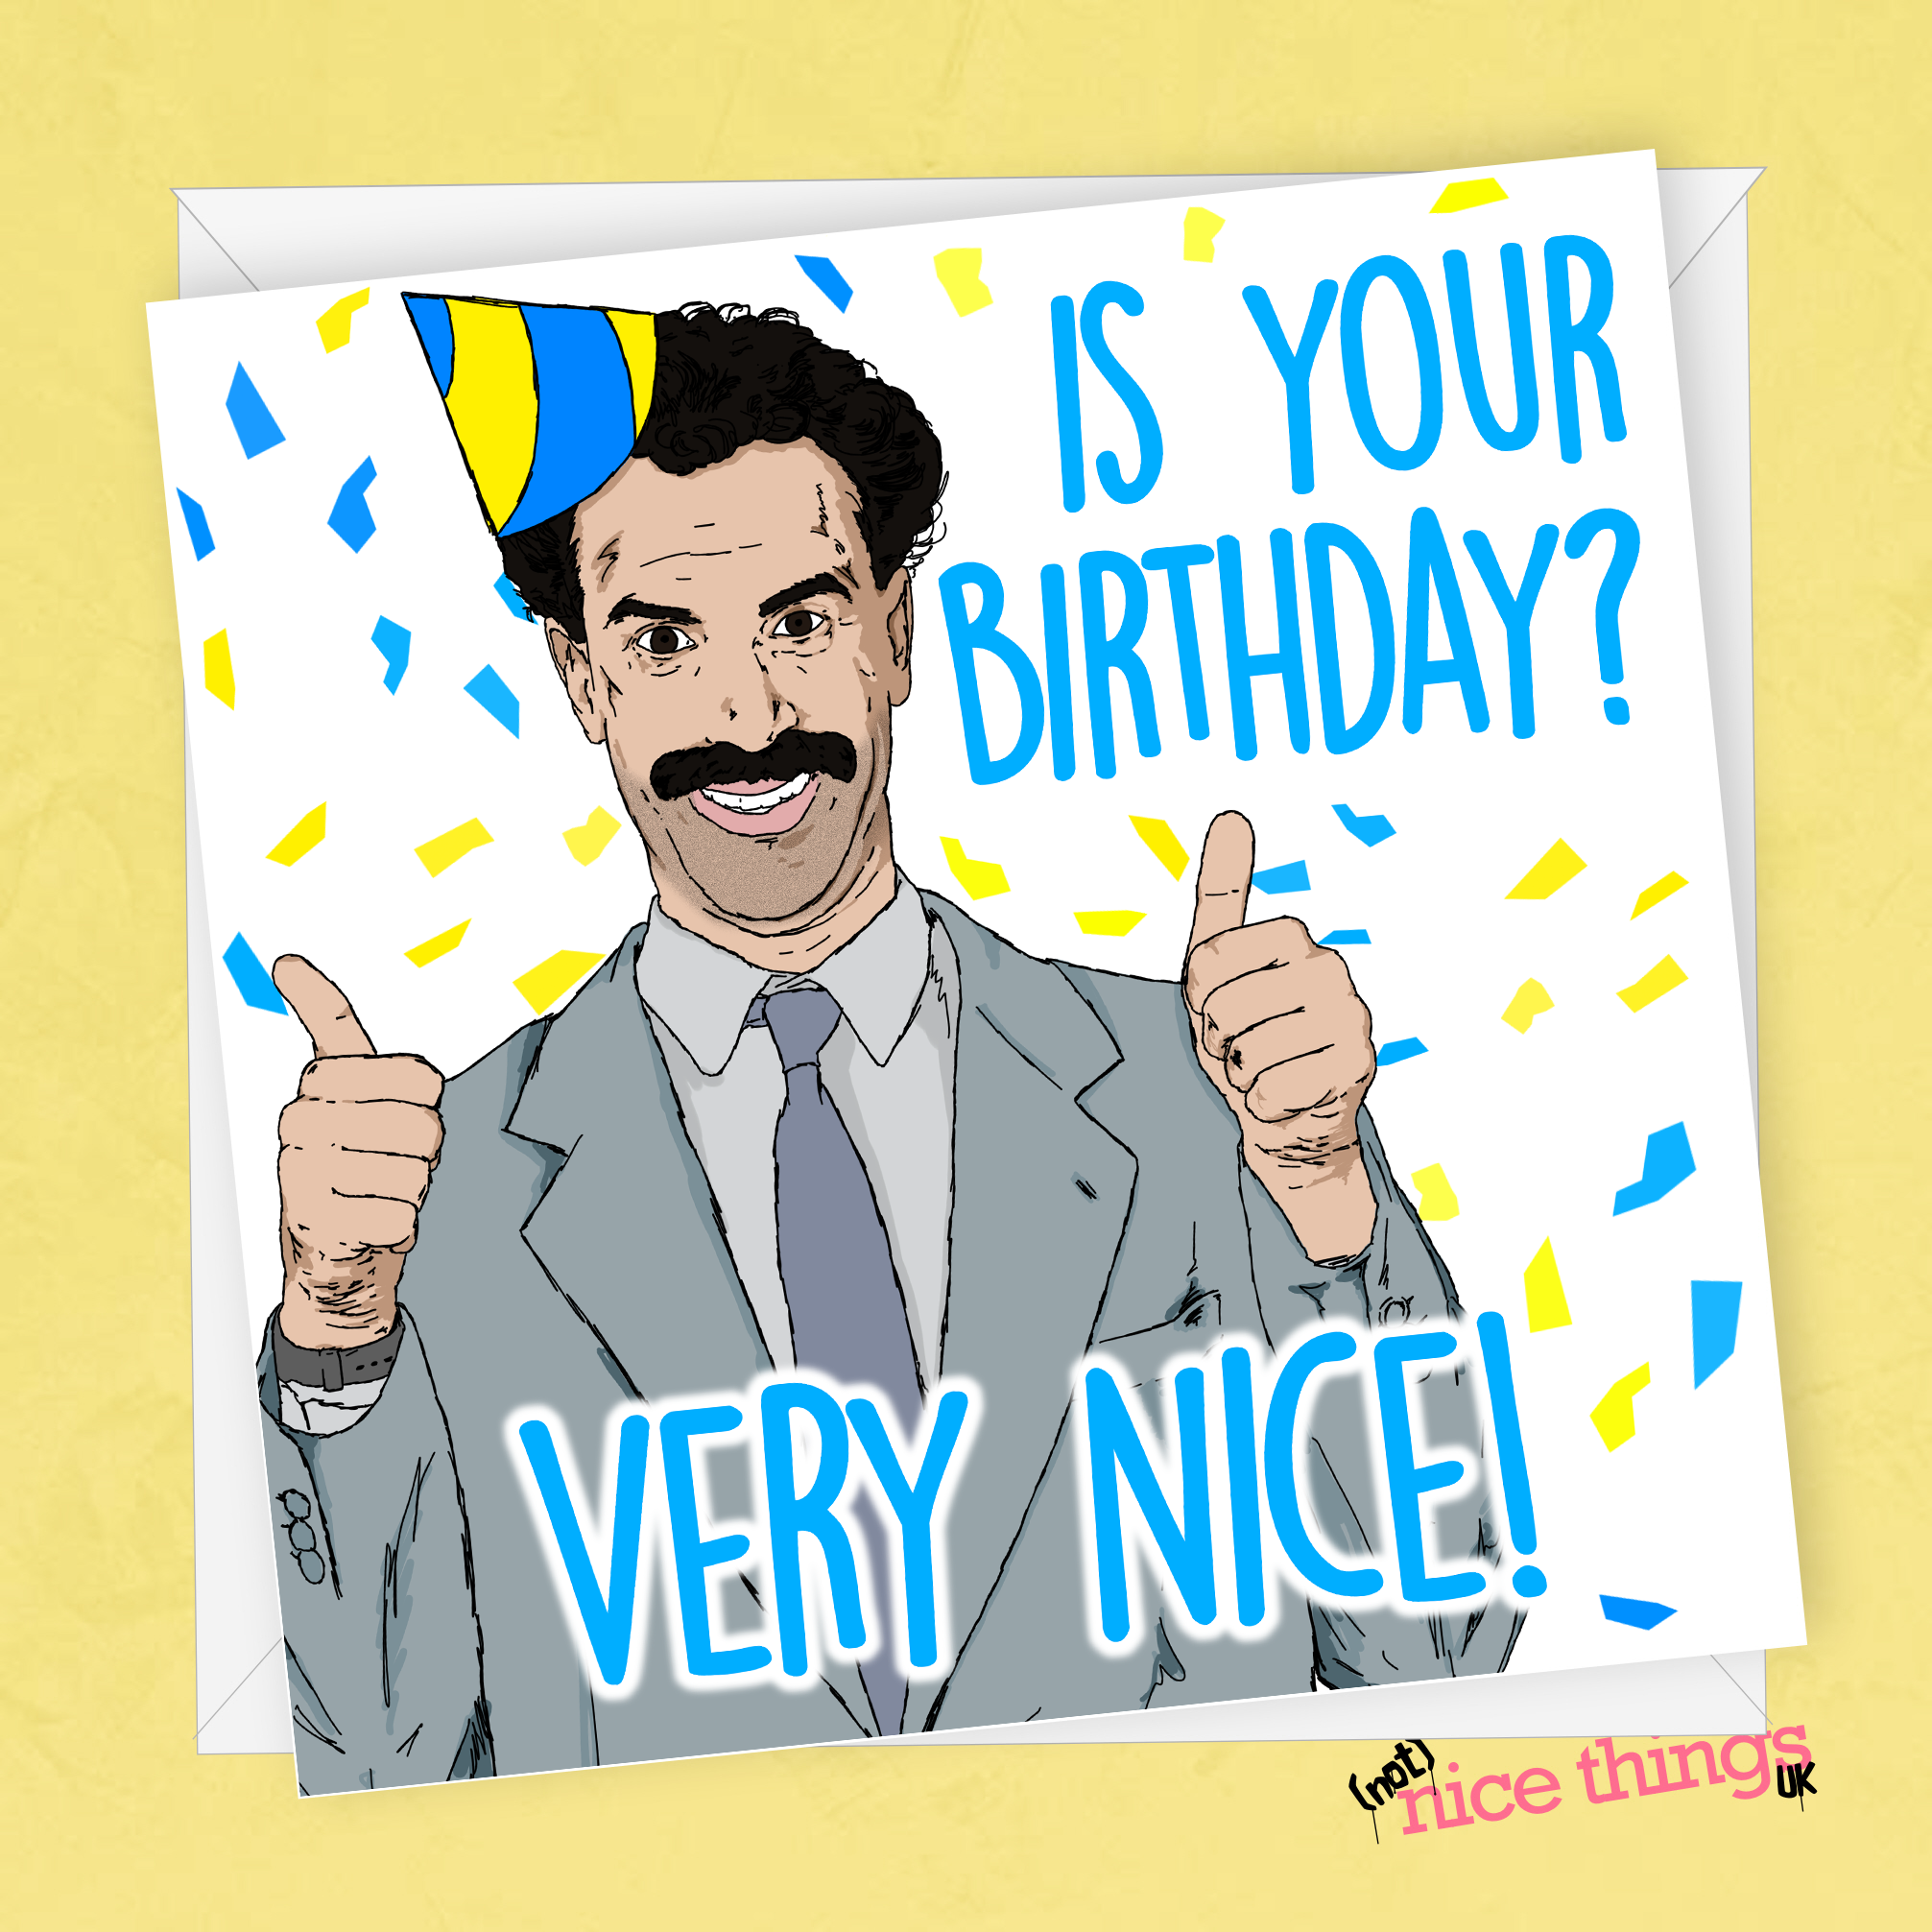 Borat Funny Birthday Card, Sacha Baron Cohen Birthday Card, Card for him, Birthday Card for Dad, Brother, Ali G, Borat Card, Borat 2, Bruno